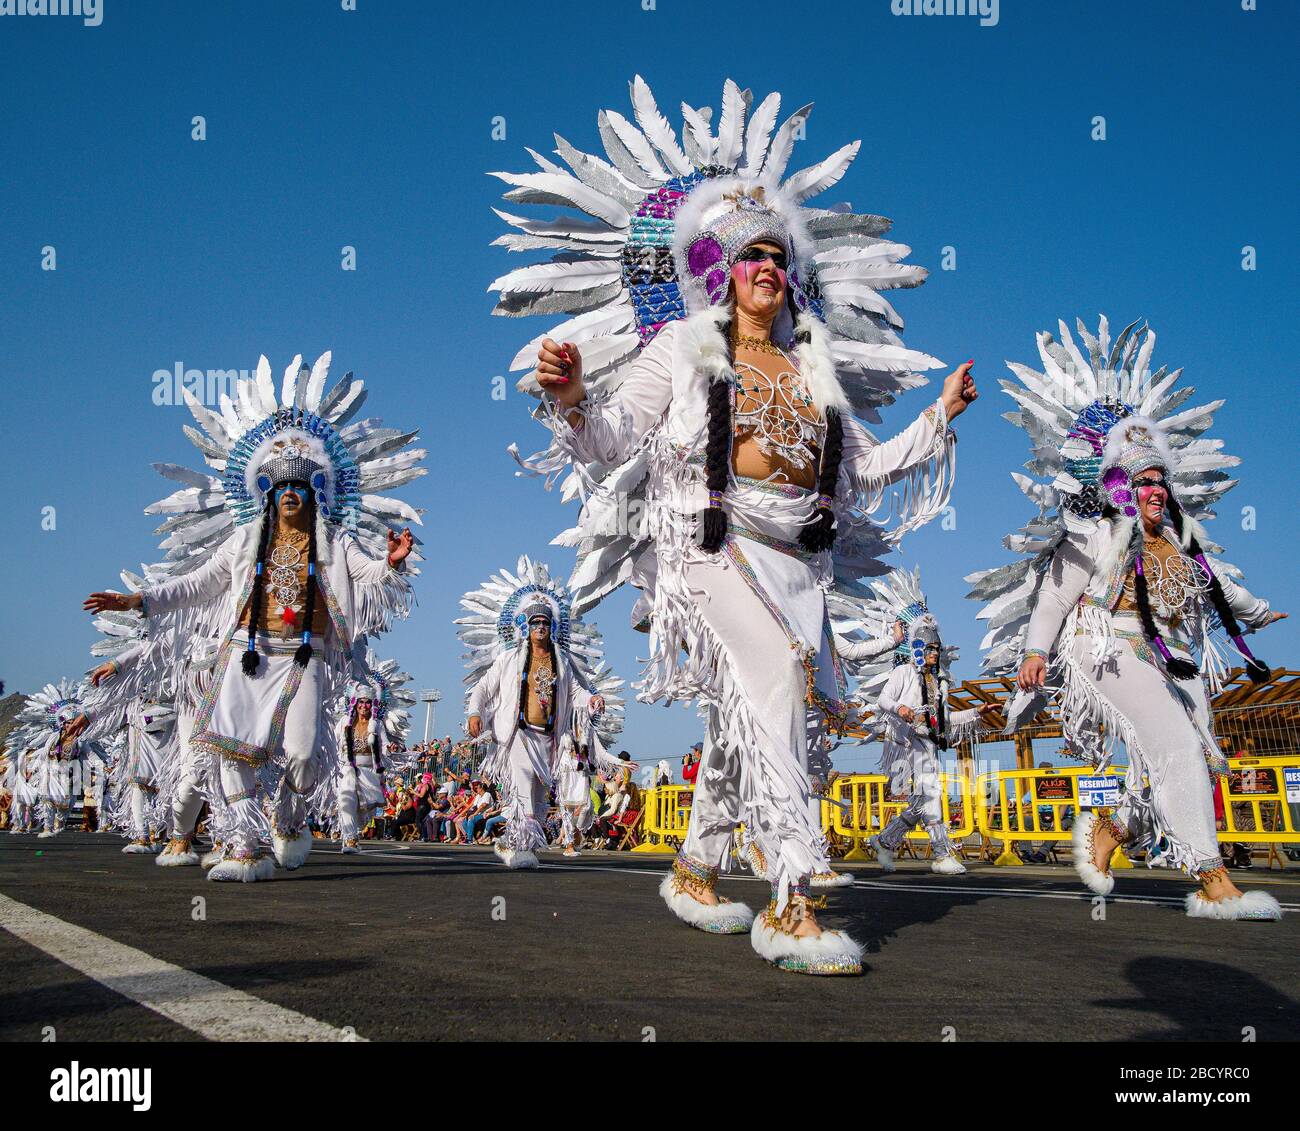 Ballerini splendidamente vestiti, che presentano i loro costumi durante la Grande Parata del Carnevale Foto Stock